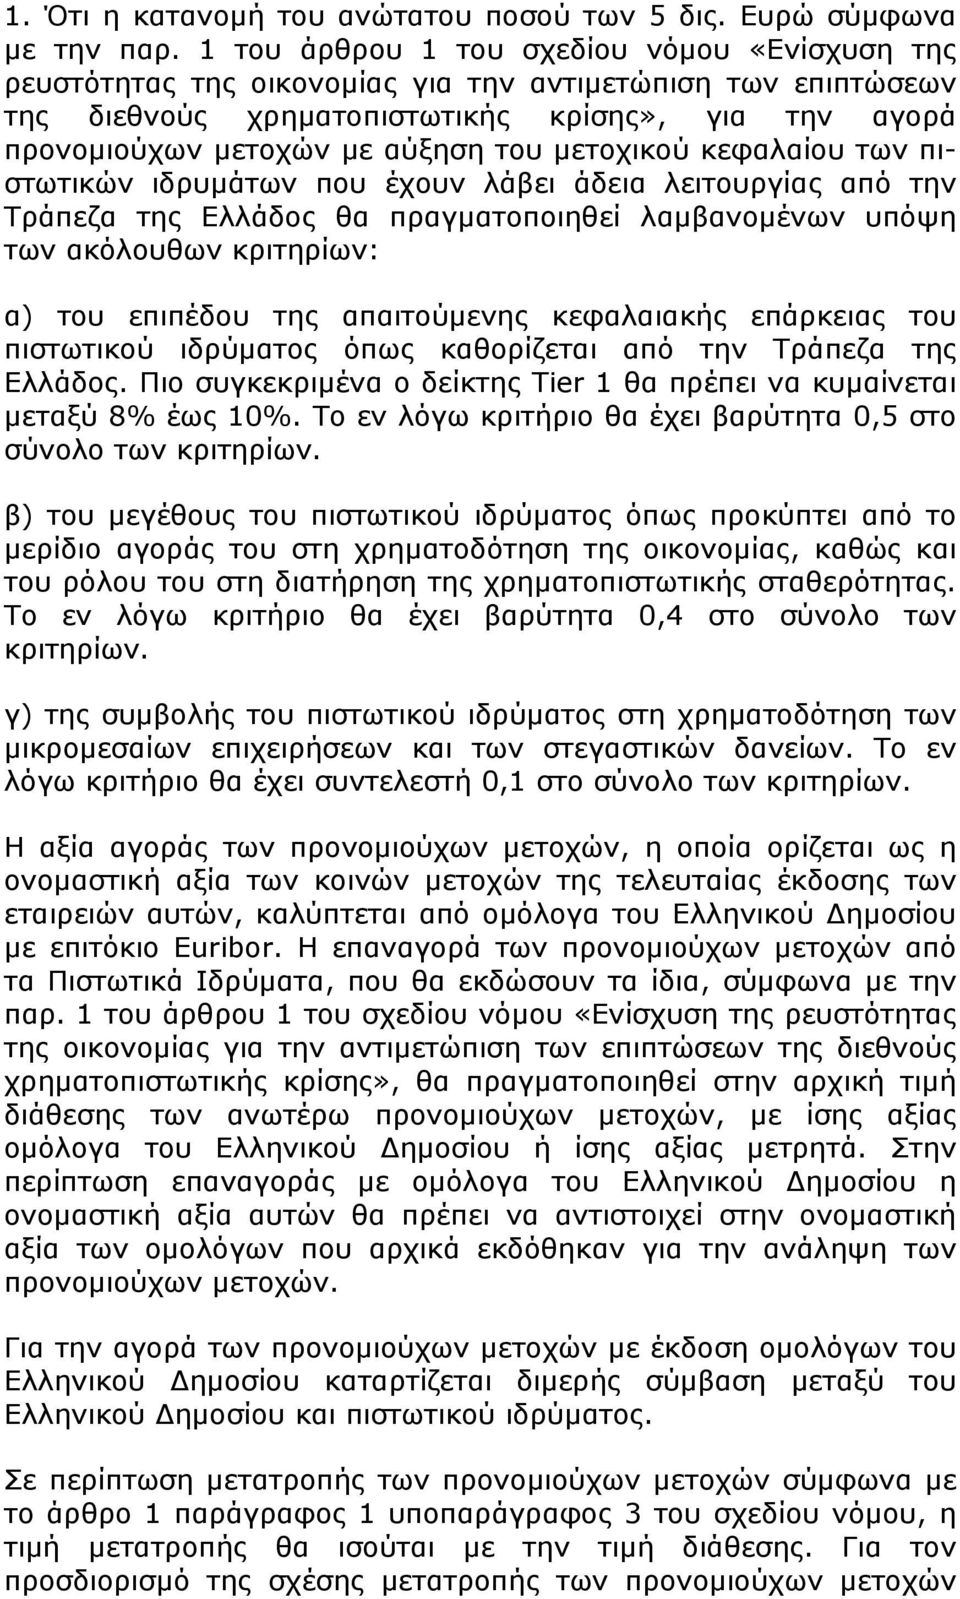 μετοχικού κεφαλαίου των πιστωτικών ιδρυμάτων που έχουν λάβει άδεια λειτουργίας από την Τράπεζα της Ελλάδος θα πραγματοποιηθεί λαμβανομένων υπόψη των ακόλουθων κριτηρίων: α) του επιπέδου της